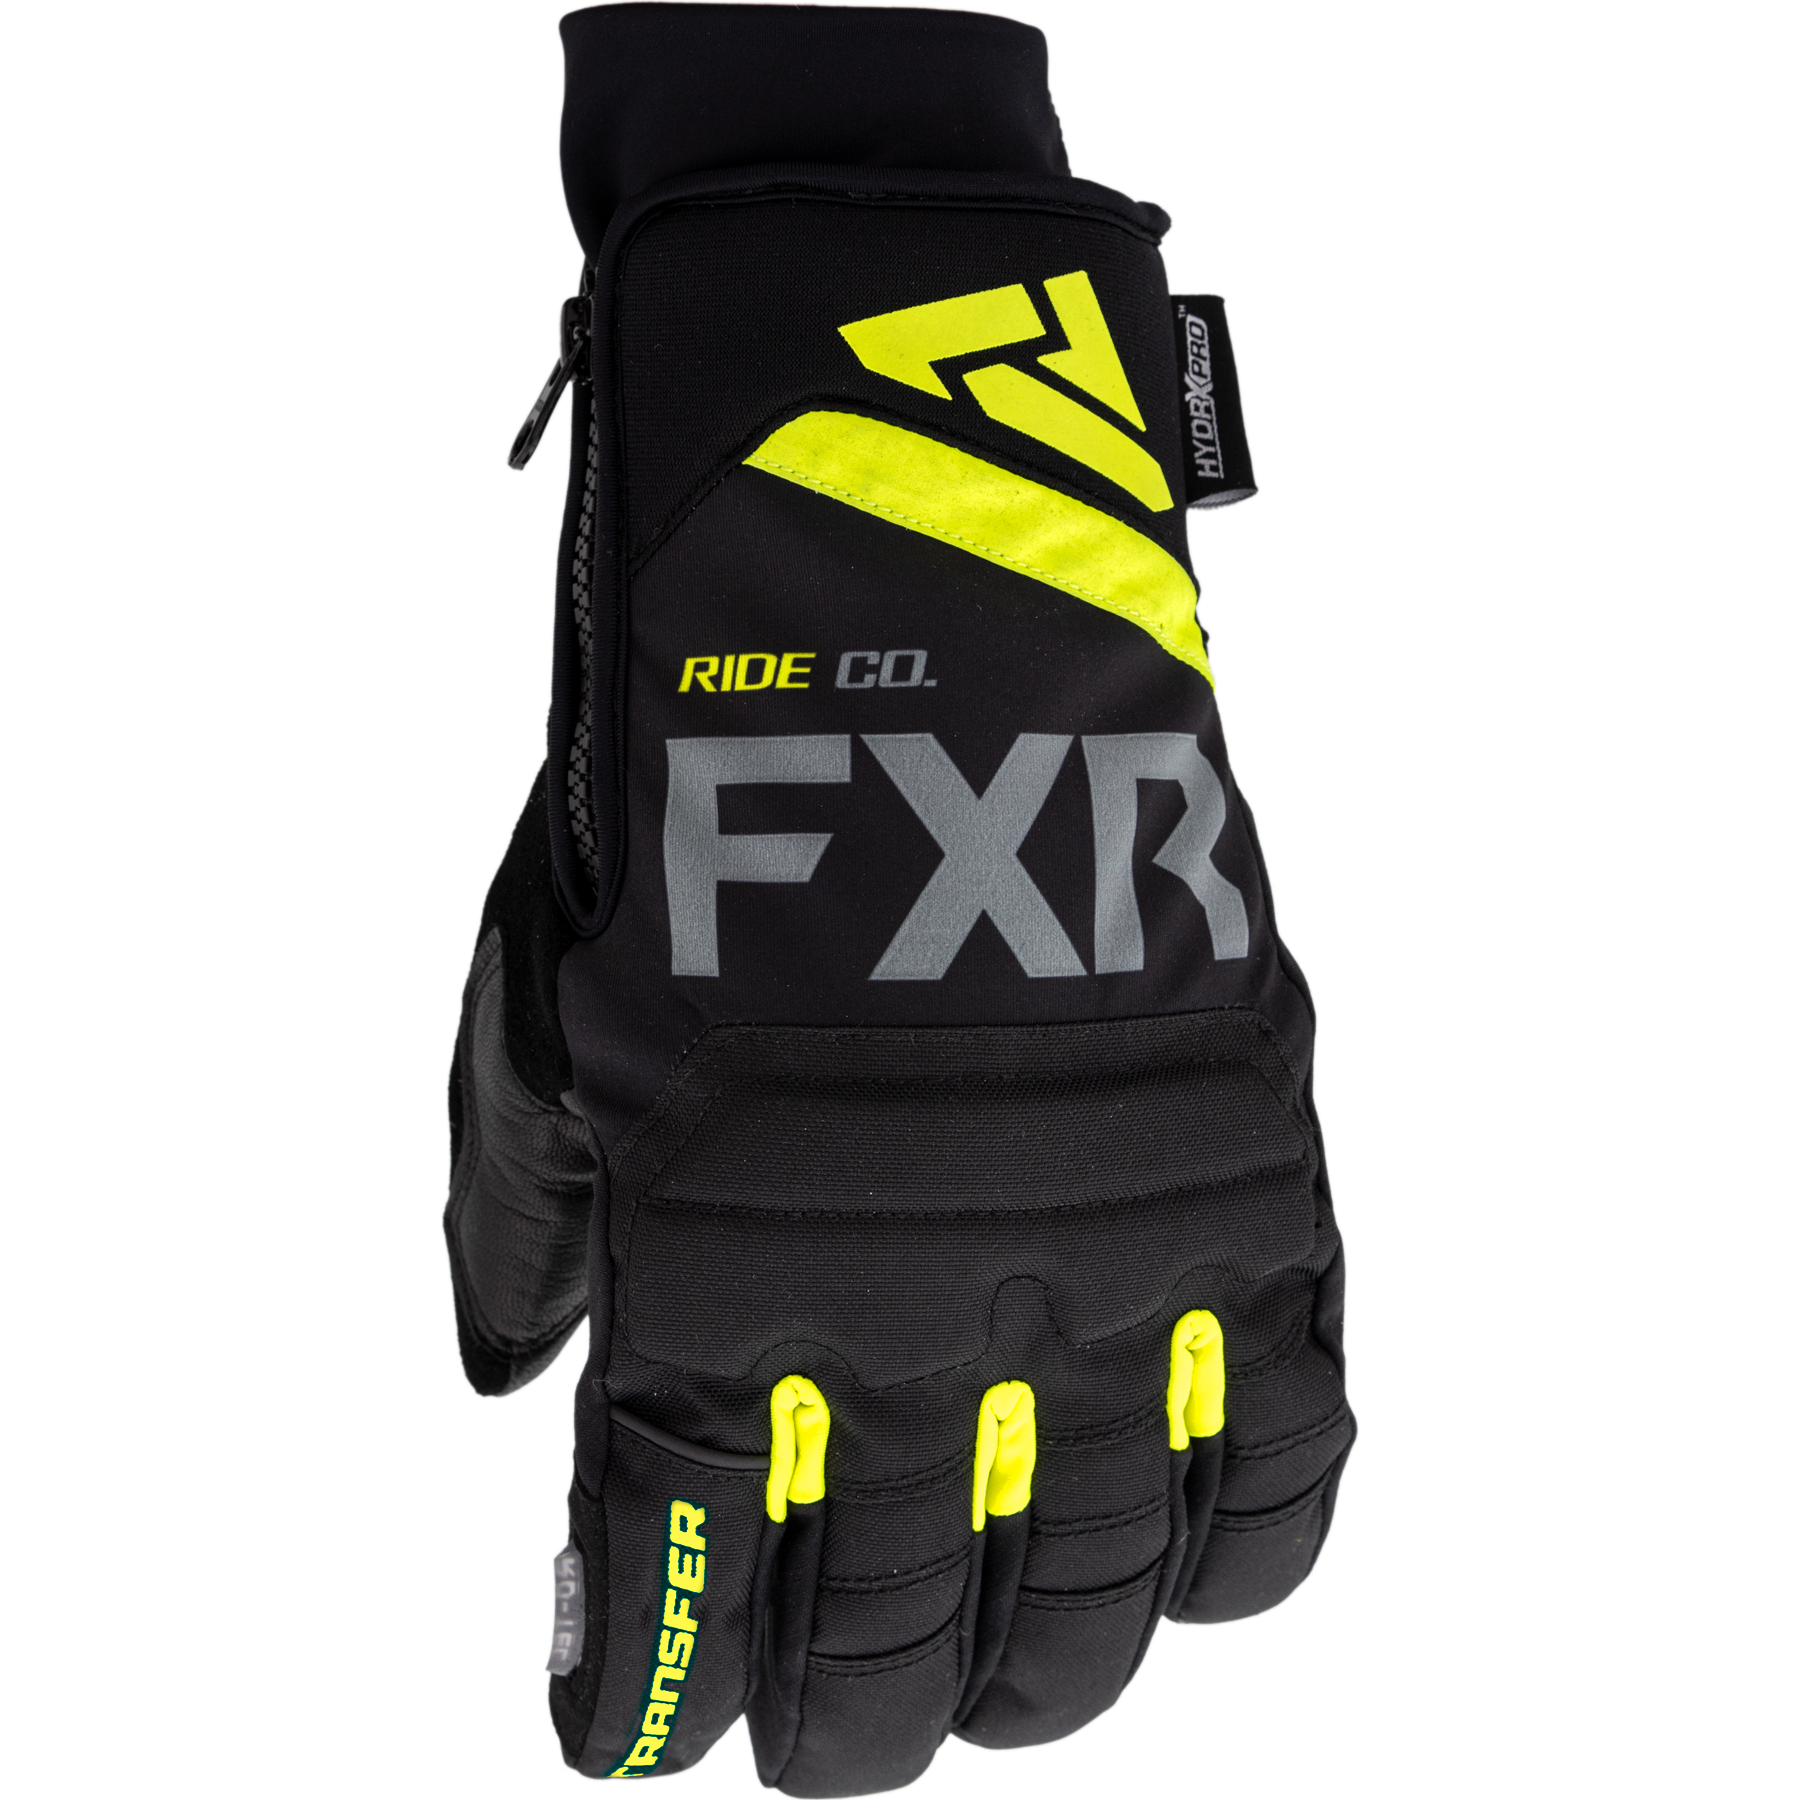 fxr racing gloves for men transfer short cuff